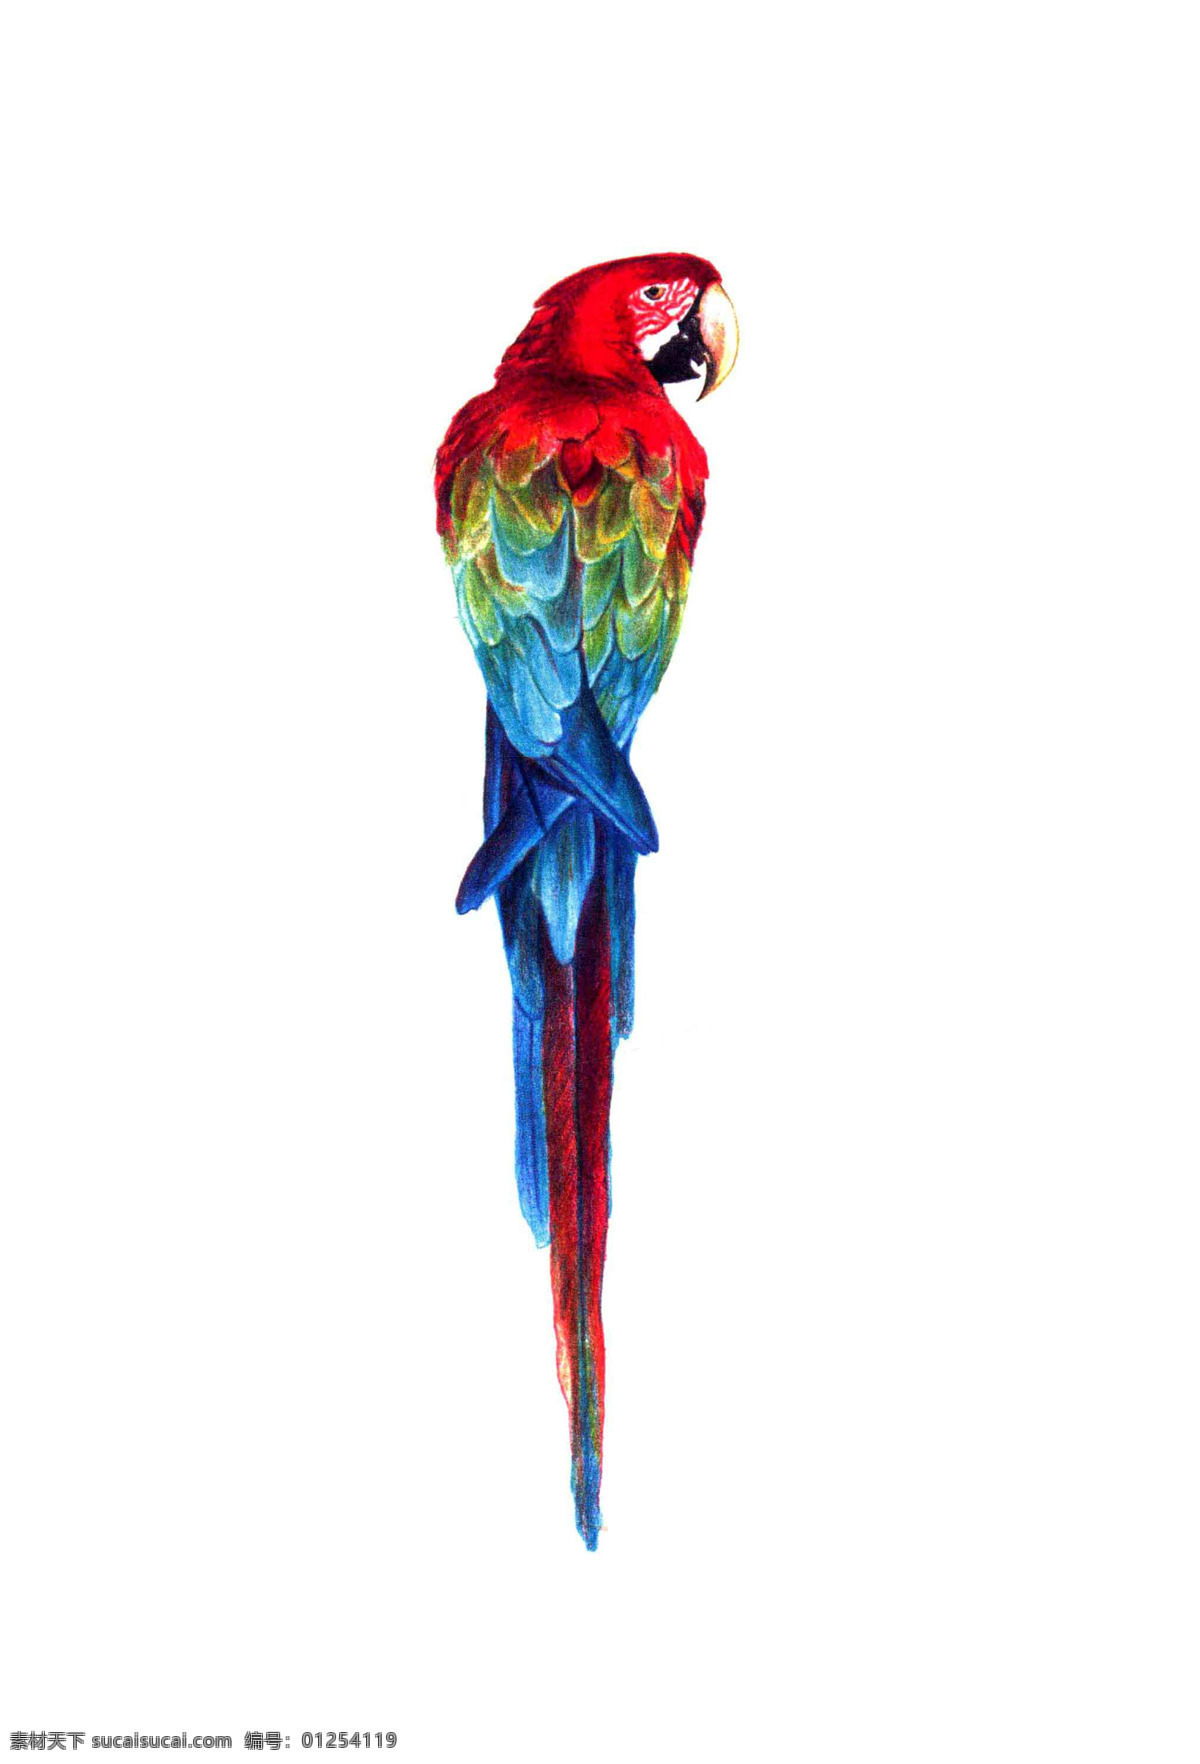 手绘彩色鹦鹉 手绘 彩铅 动物 动物园素材 鹦鹉 生物世界 野生动物